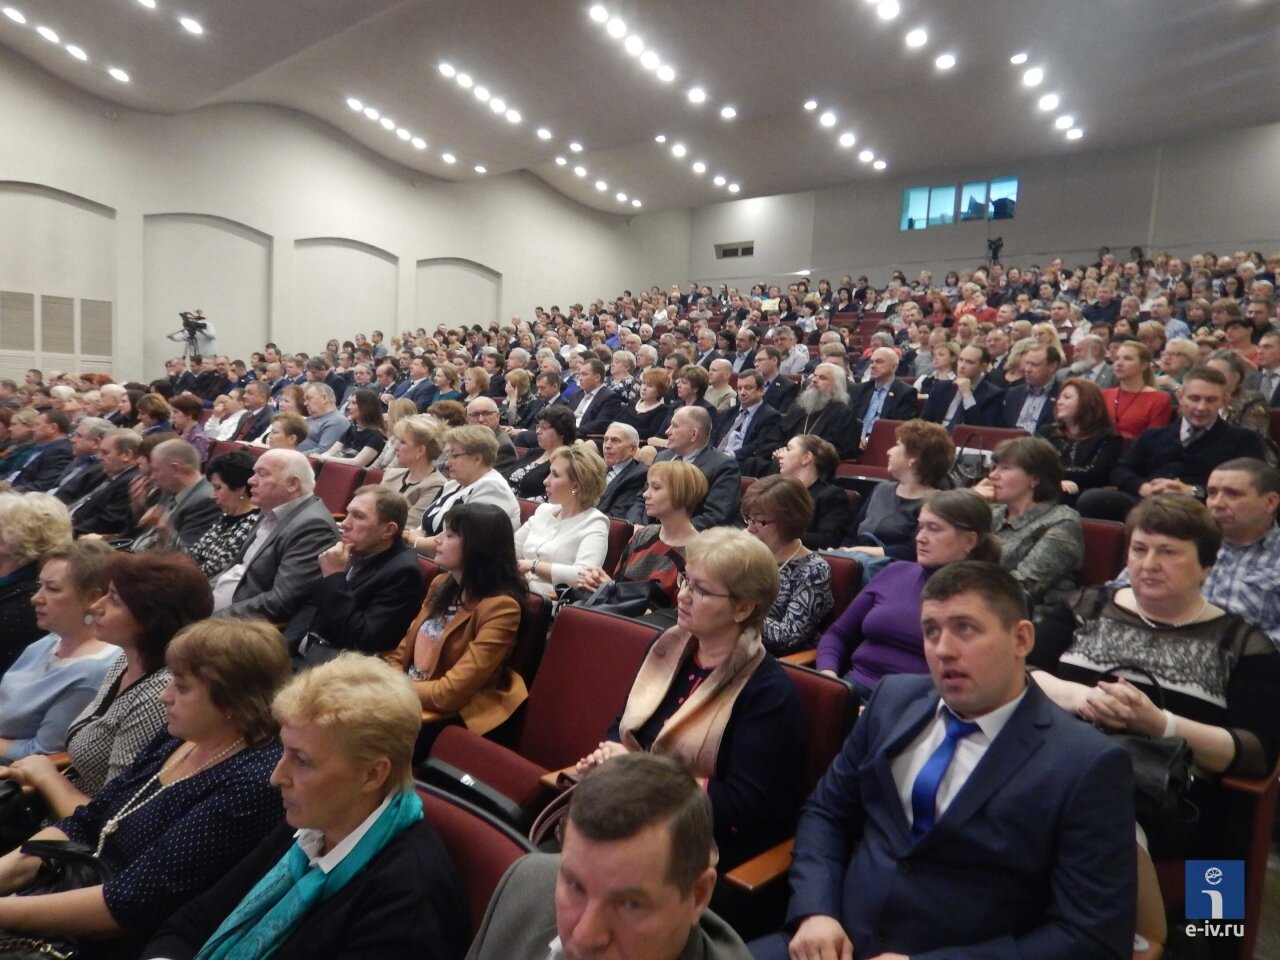 Участники расширенного Совета депутатов в зале ДК "Юбилейный", Ивантеевка, Московская область